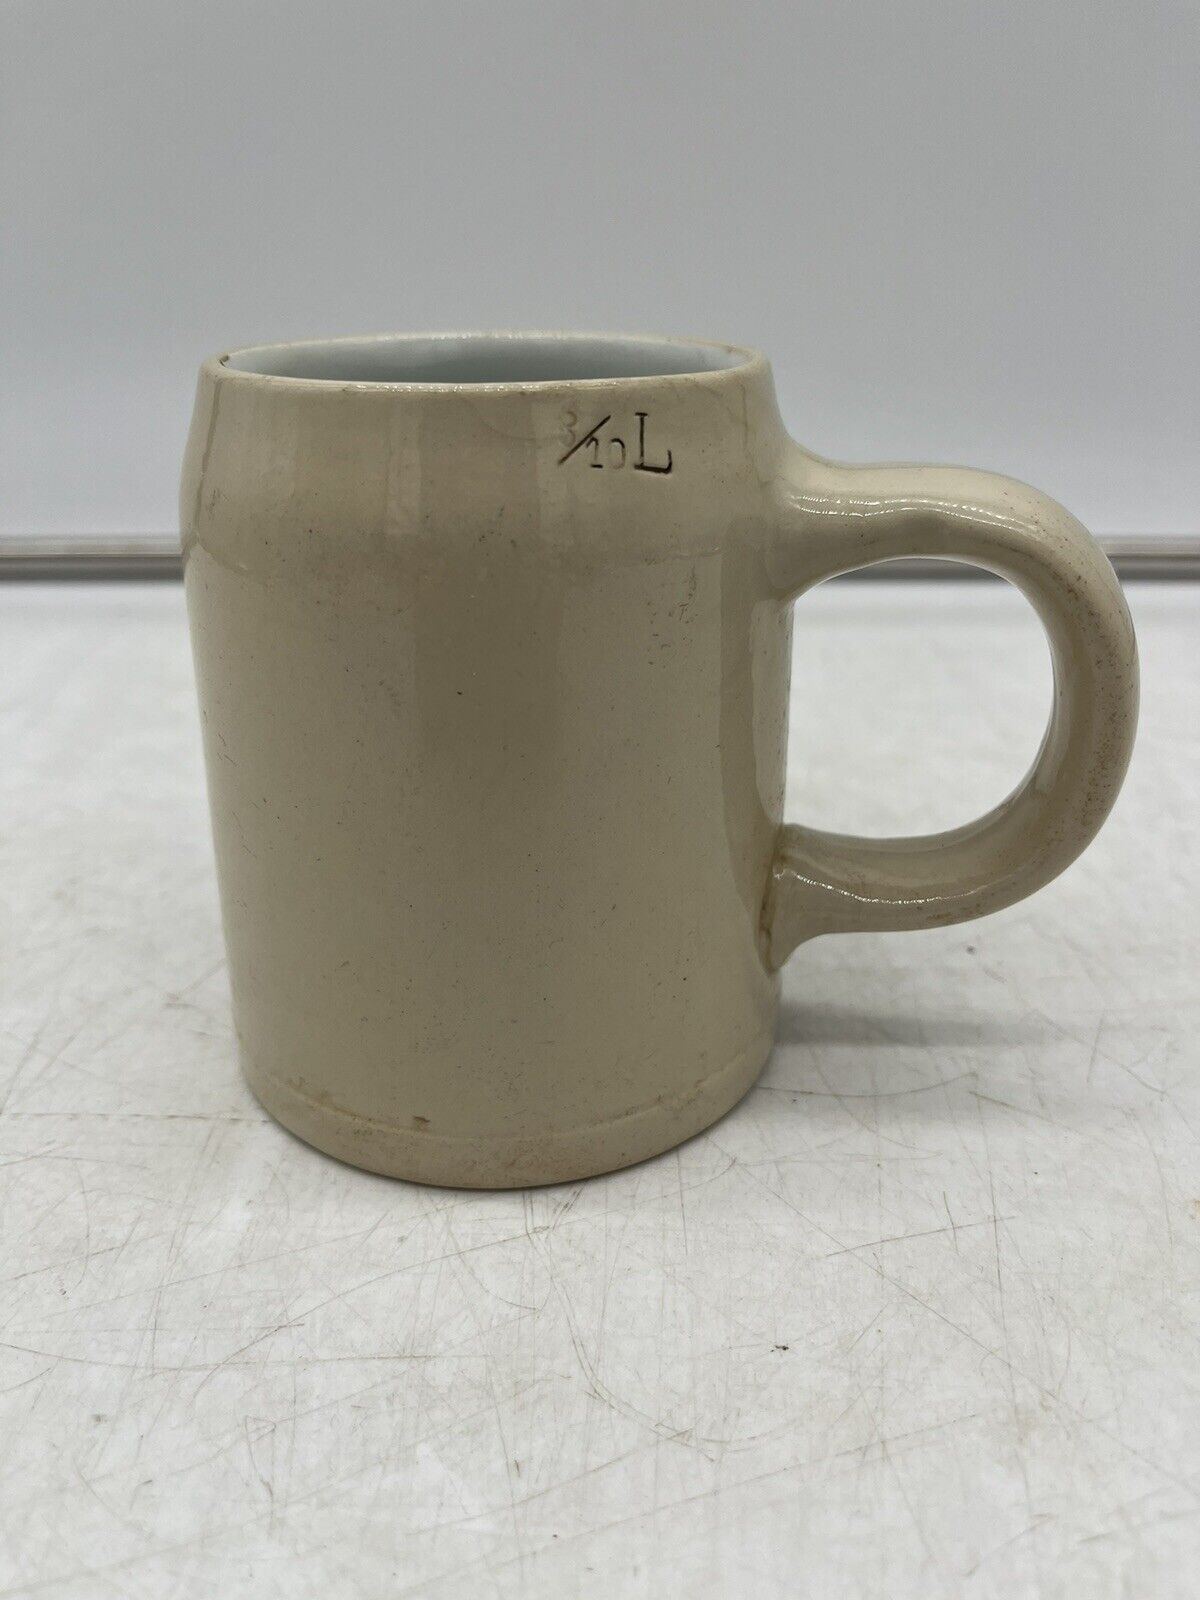 Antique Villeroy & Boch Mettlach Beer Stein NO LID Coffee Mug Tea Cup Germany